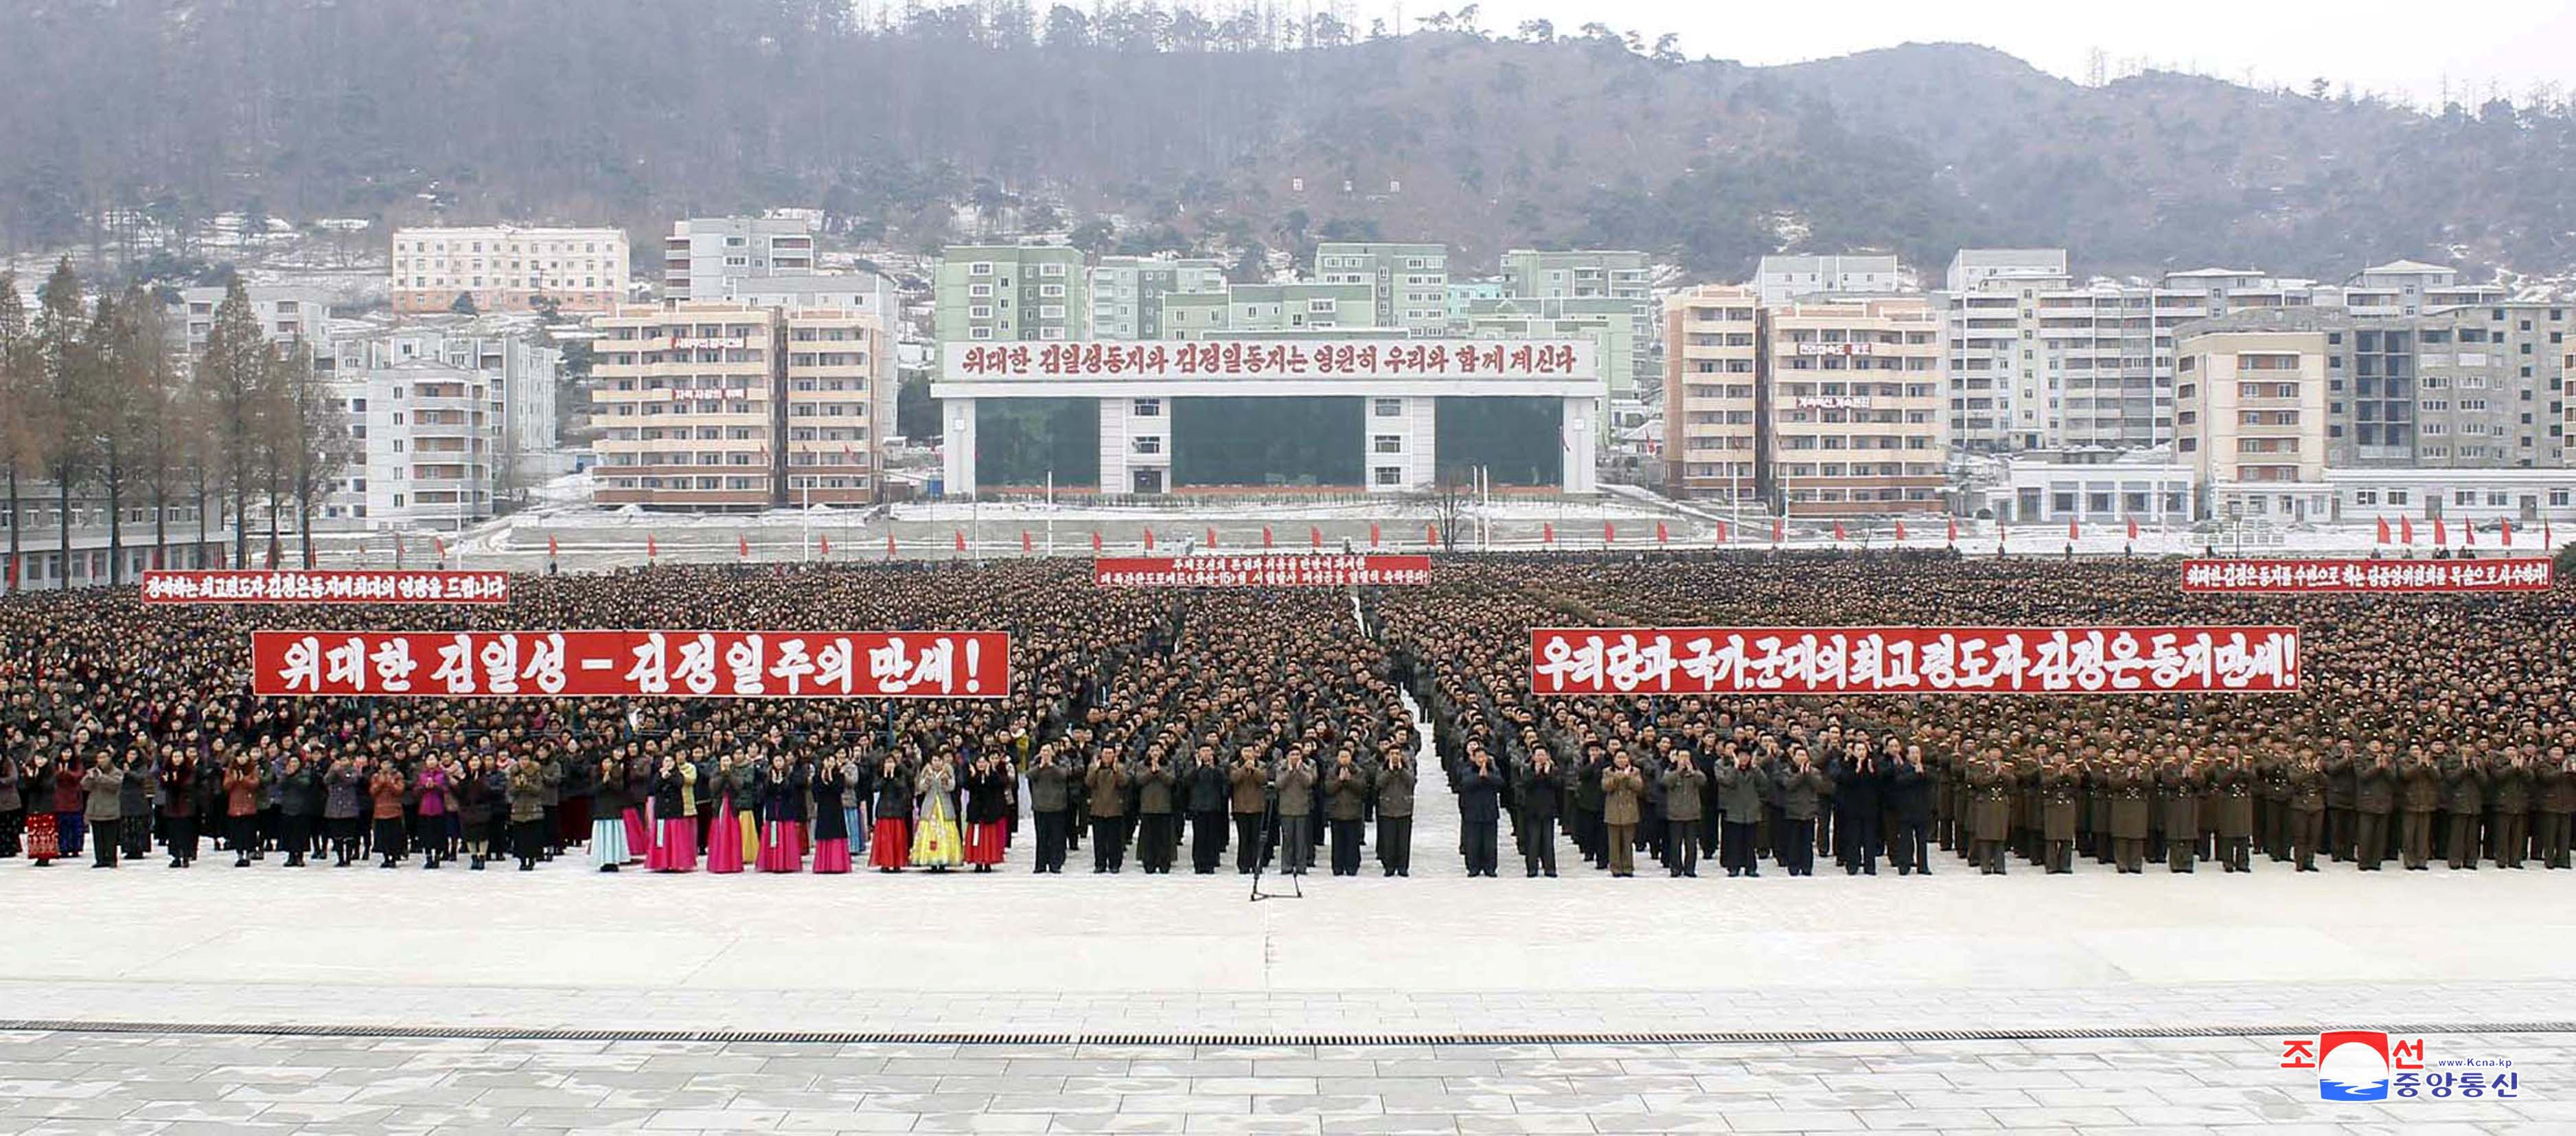 شعب كوريا الشمالية يحتفل بالتقدم الصاروخى